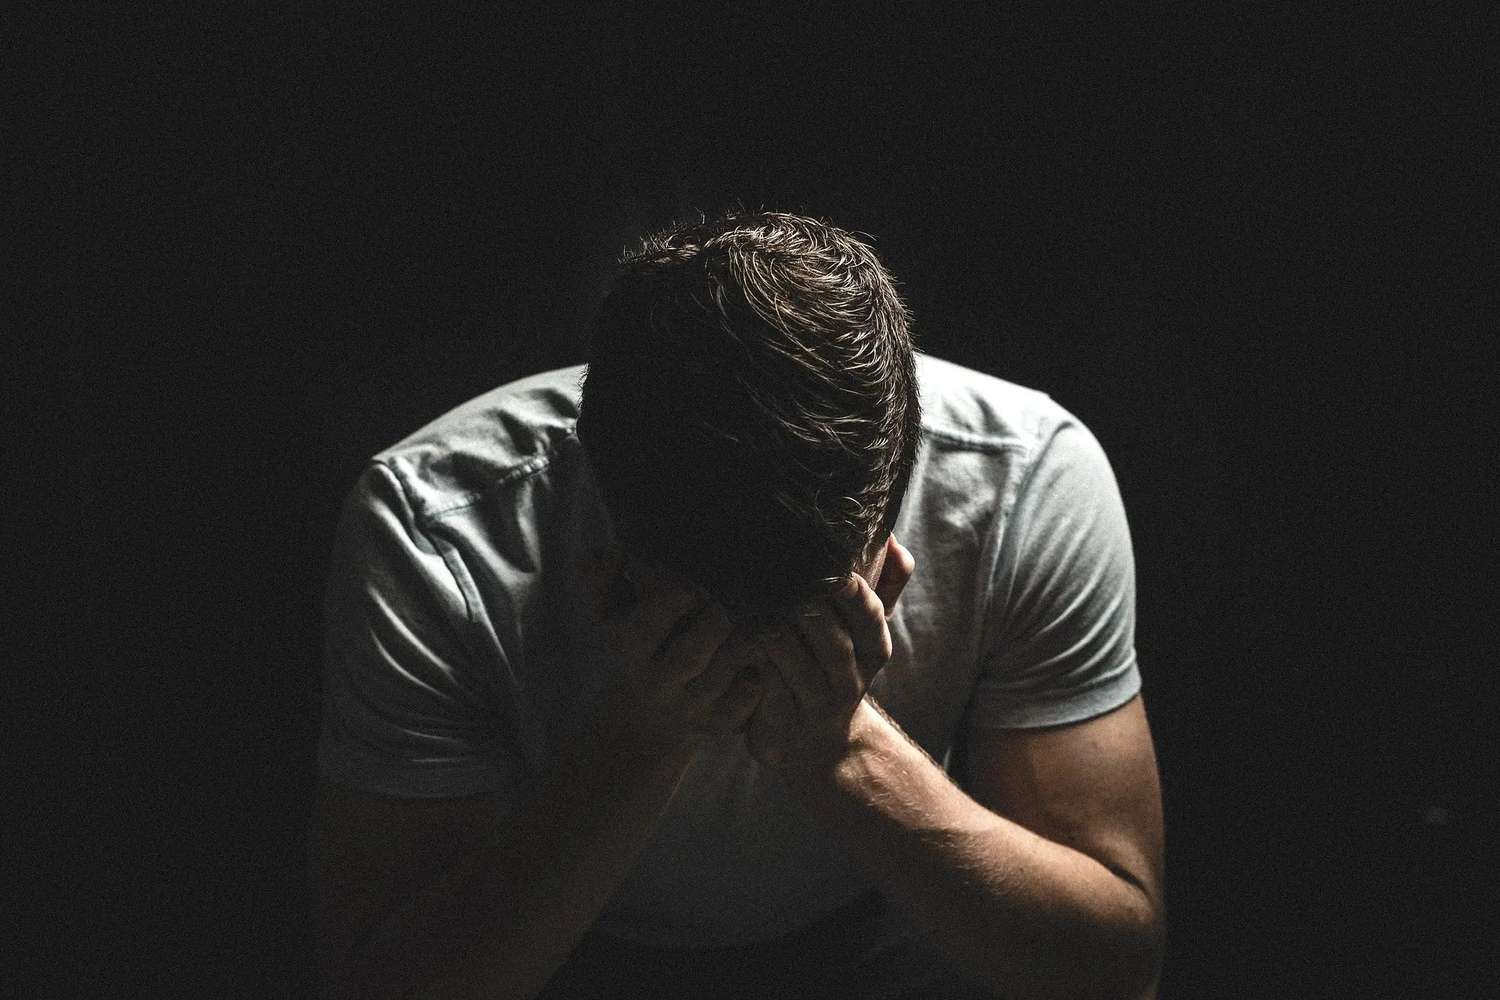 La depresión es la cuarta causa de la pérdida de años saludables de vida yel suicidio es la segunda causa de muerte entre los 15 y los 29 años.